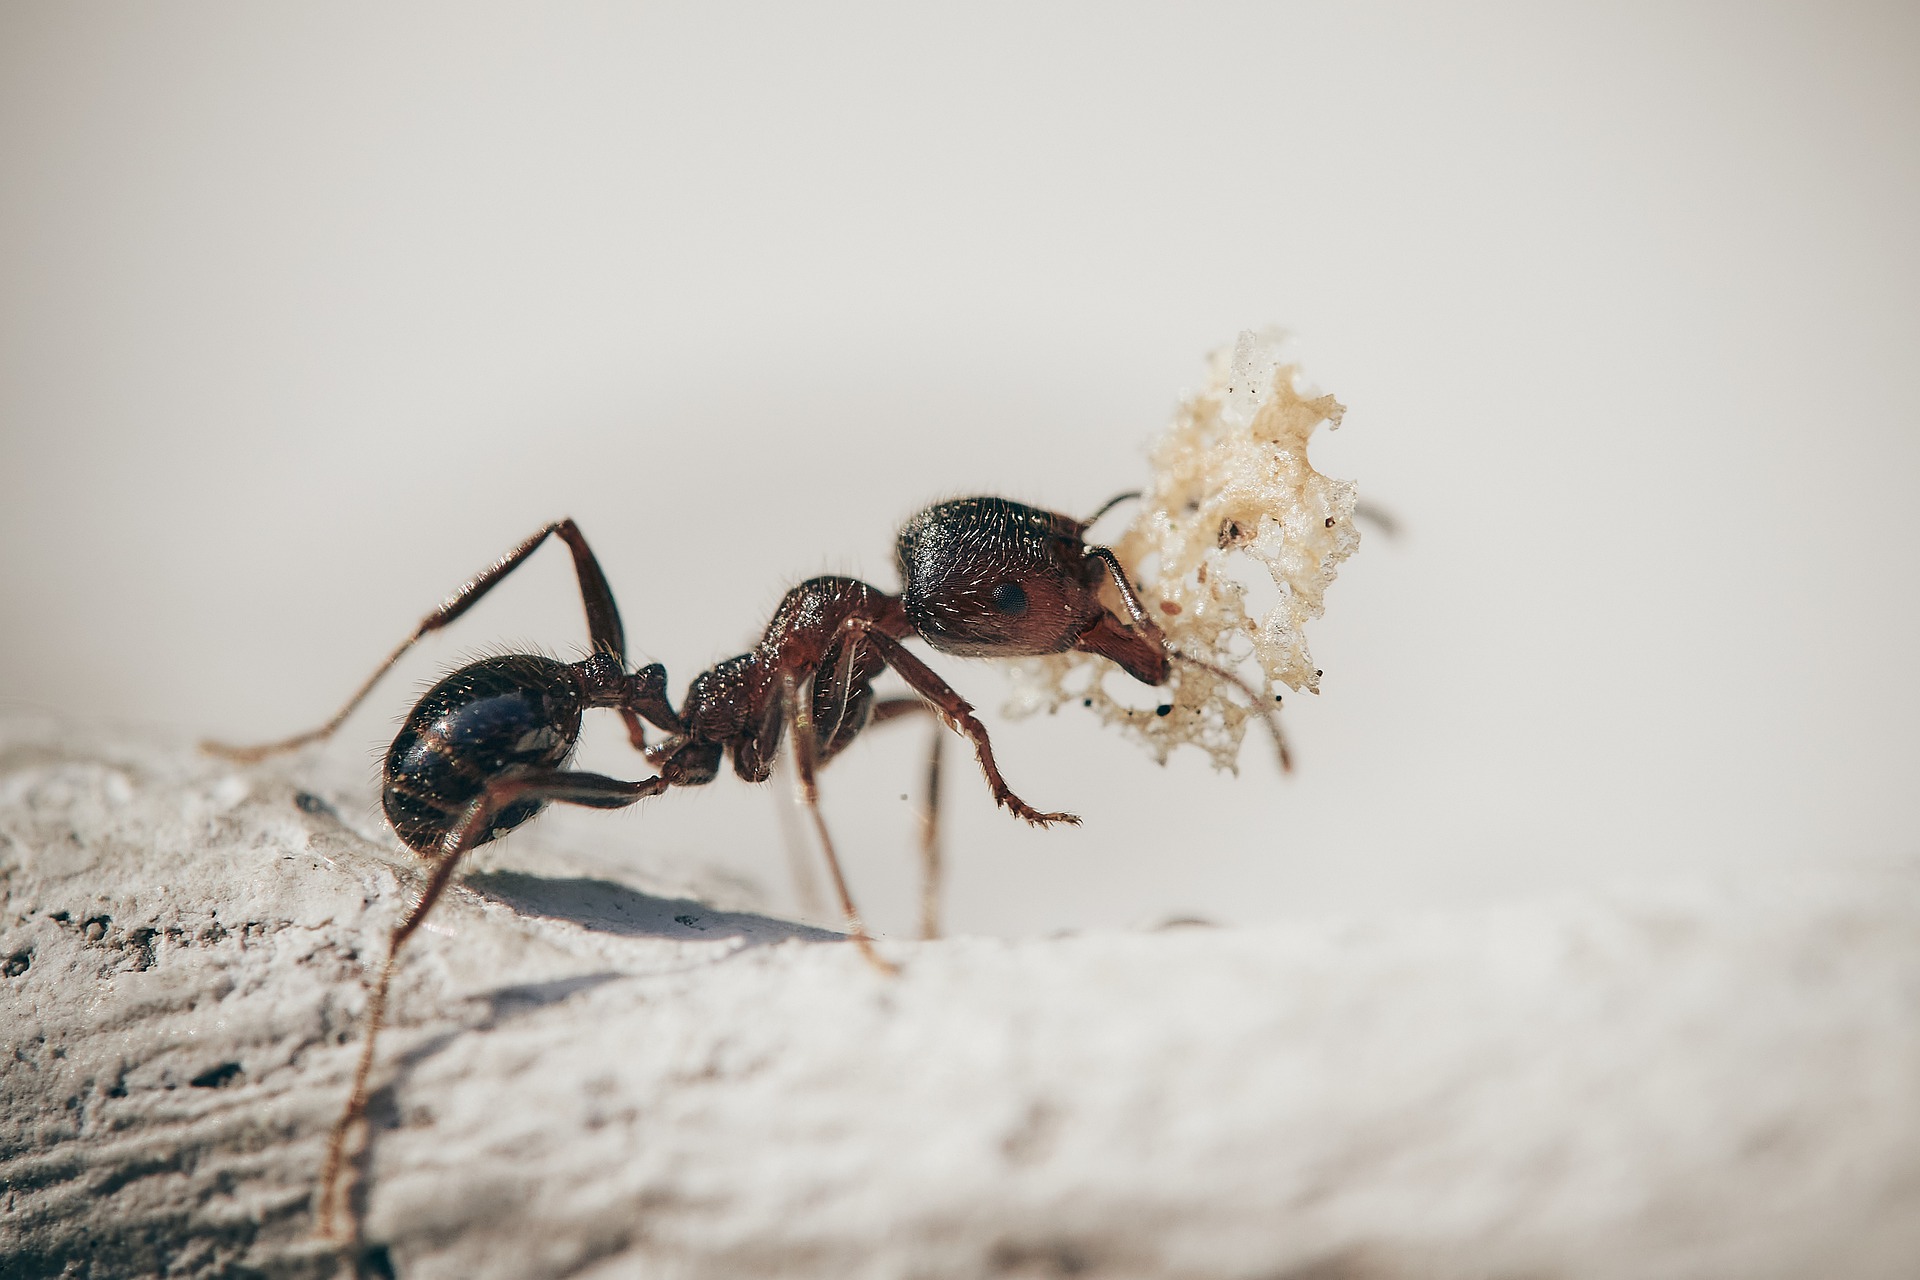 Zistite, či sú mravce stavovce alebo bezstavovce